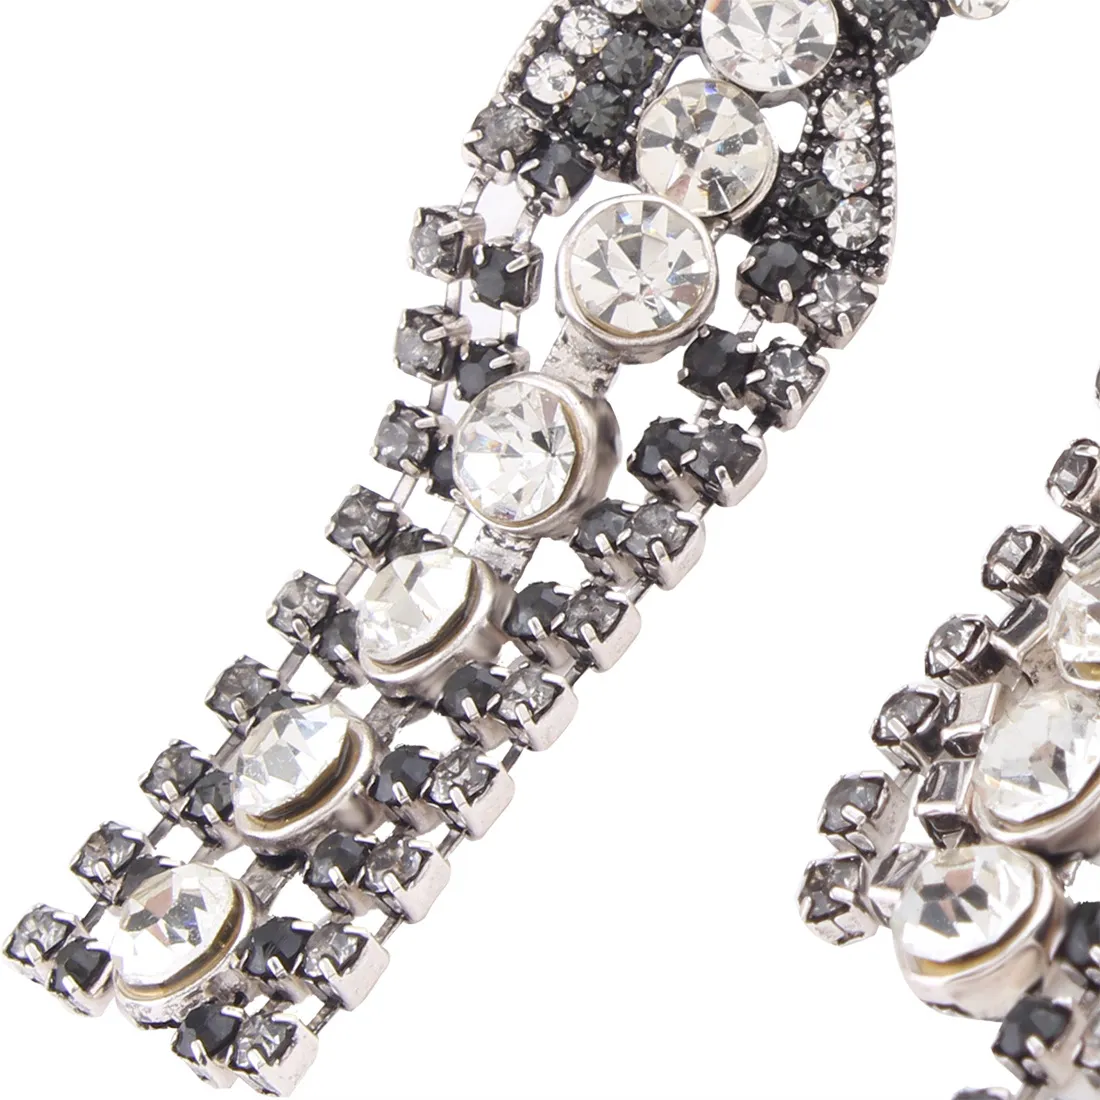 New Brand Claw Crystal statement Stud earrings for women Fashion rock jewelry Rhinestone Tassel earrings pendant Vintage Brincos Bijoux